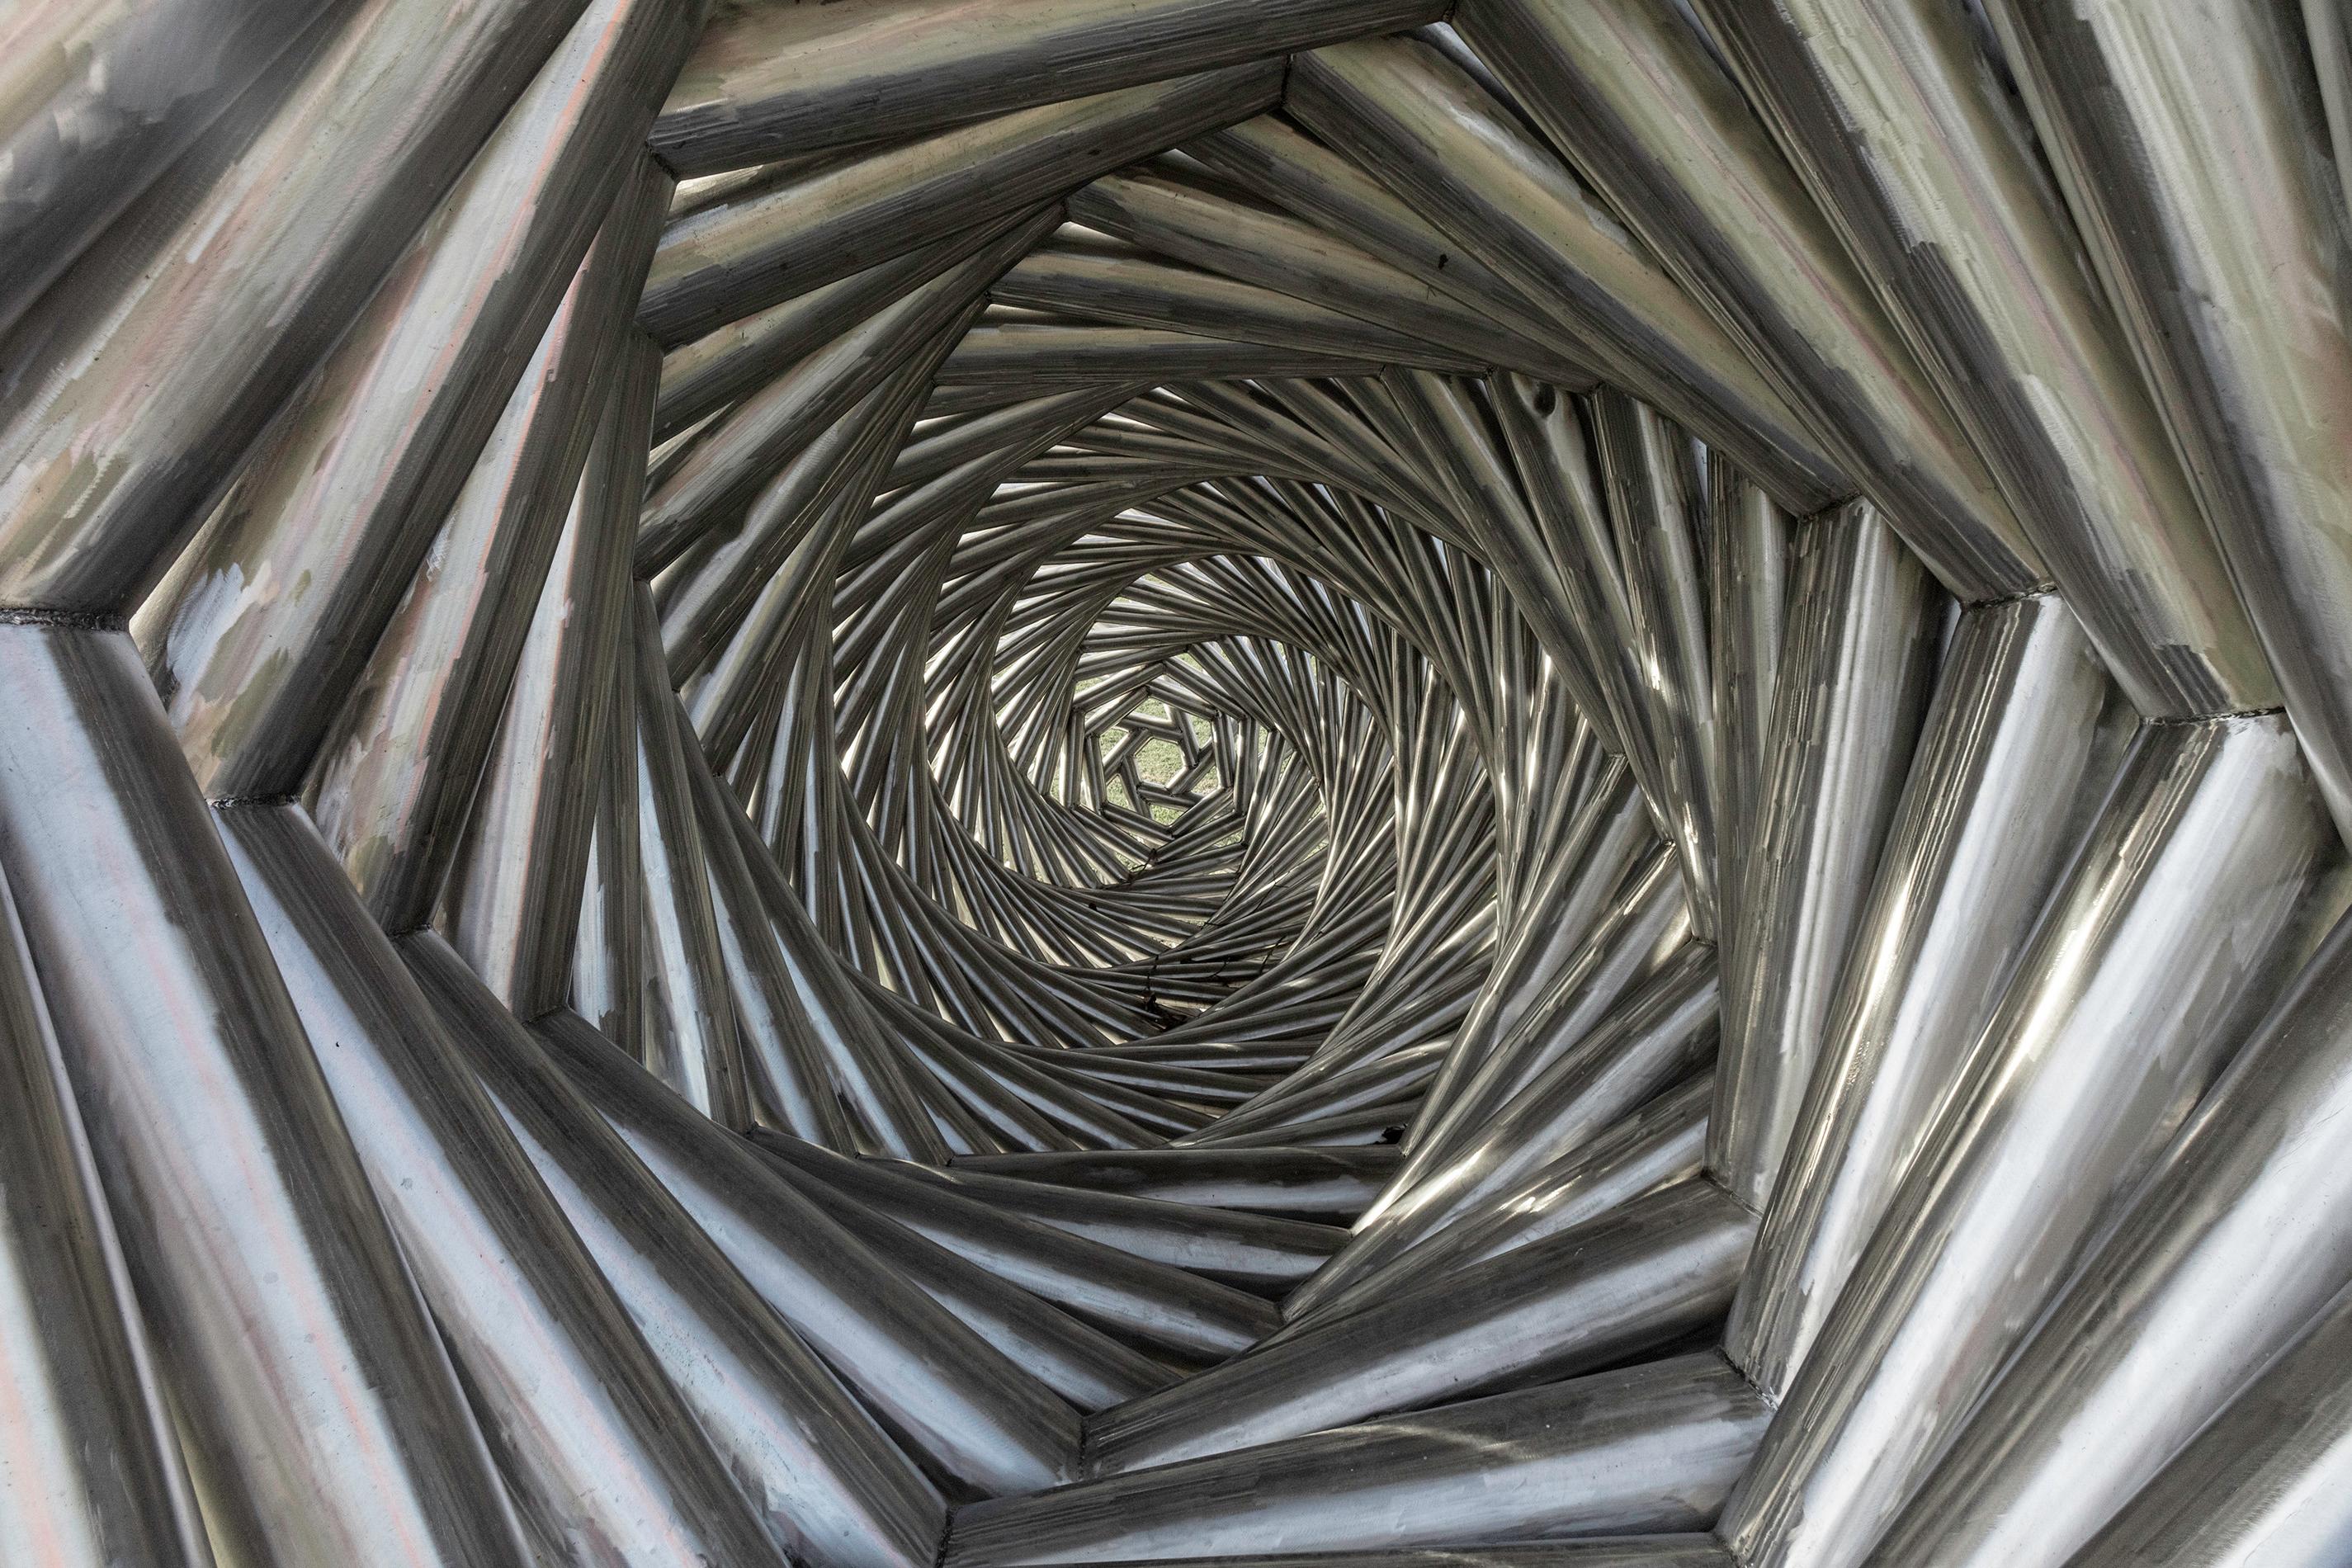 Cette superbe sculpture extérieure de l'artiste américain Jason Kimes a été inspirée par la forme remarquablement complexe et magnifique d'un nid d'oiseau. Forgé dans de l'acier inoxydable poli, chaque cylindre est fixé dans un motif en forme de